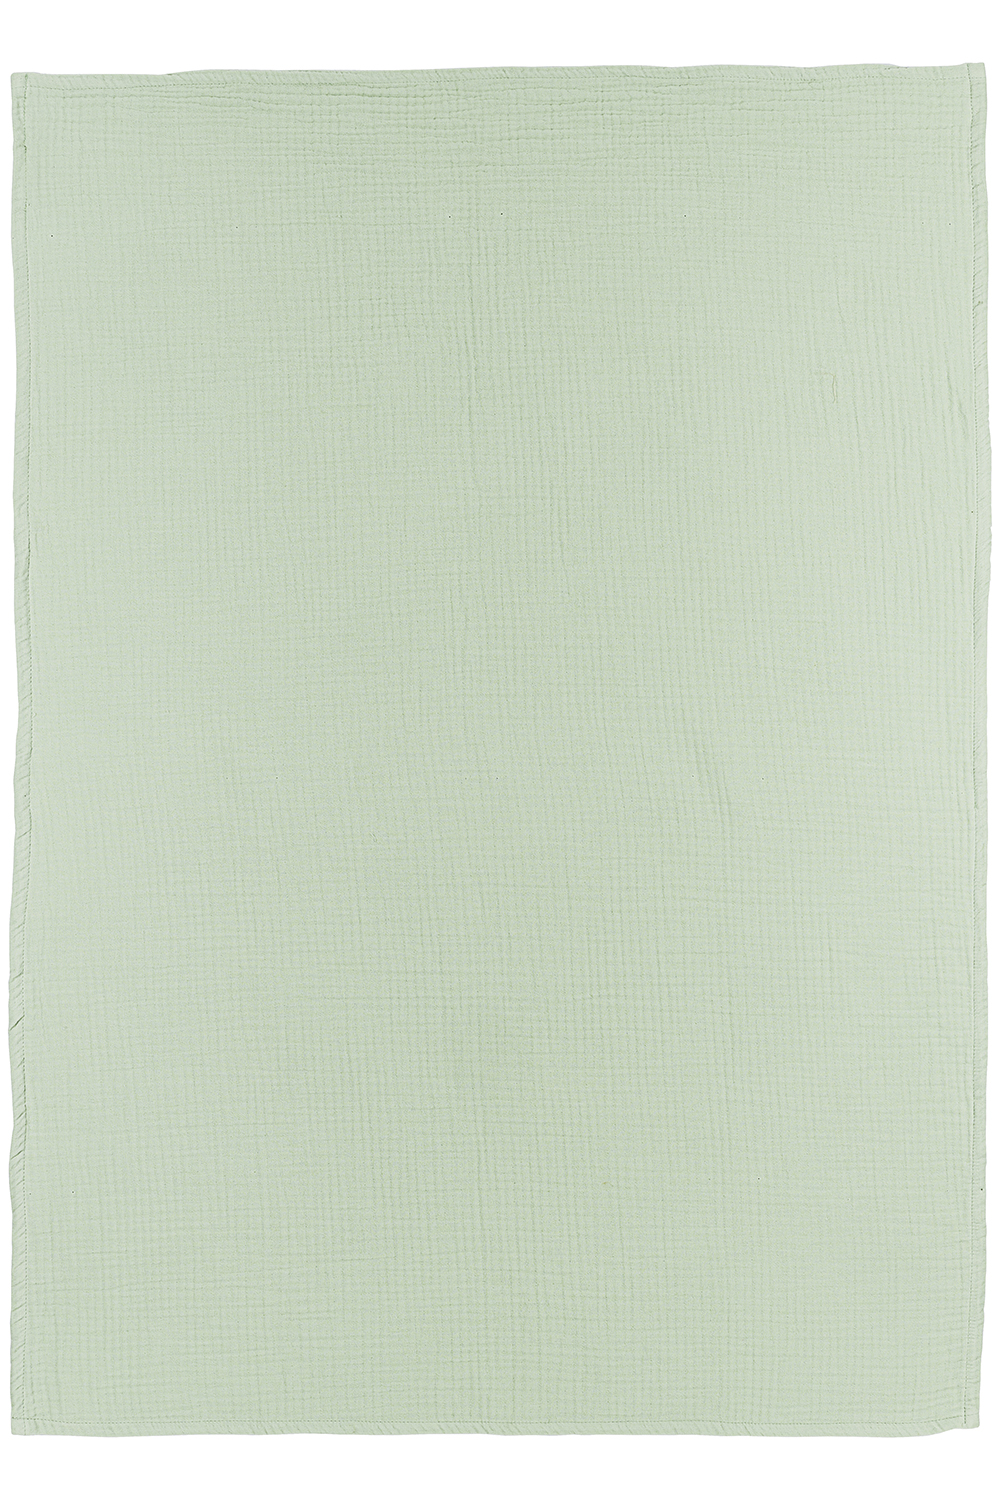 Wieglaken hydrofiel Uni - soft green - 75x100cm